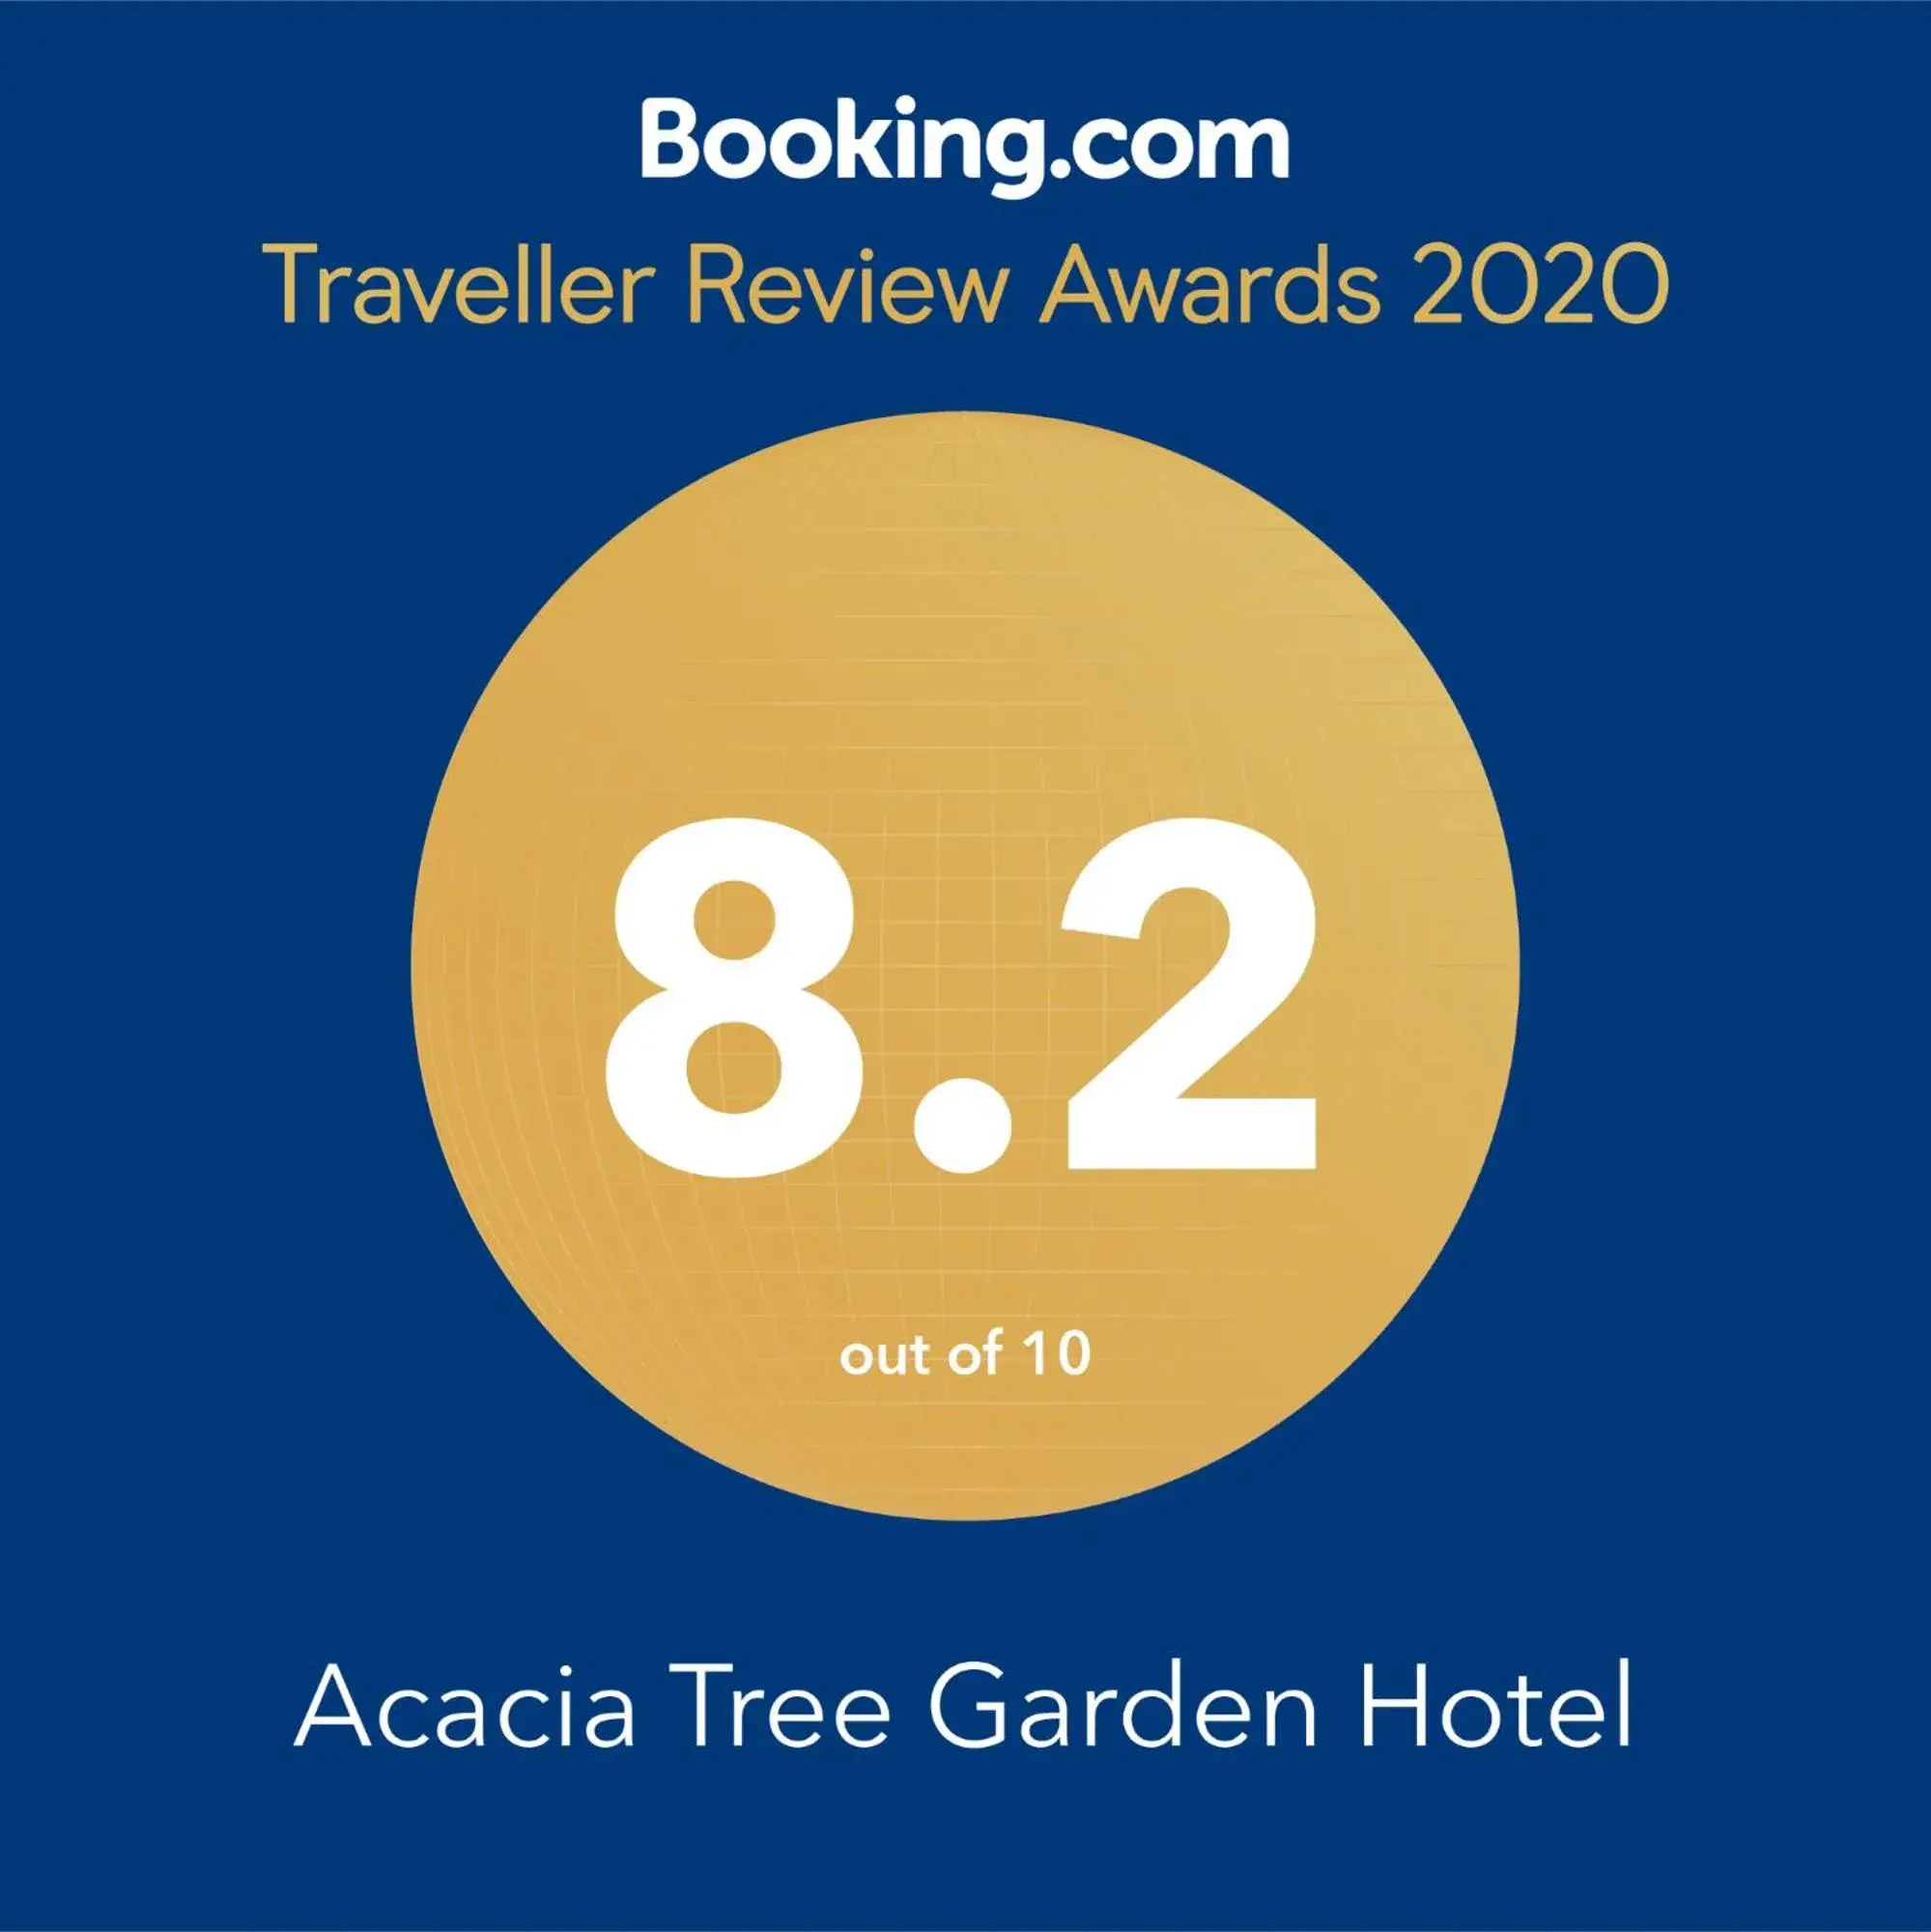 Acacia Tree Garden Hotel